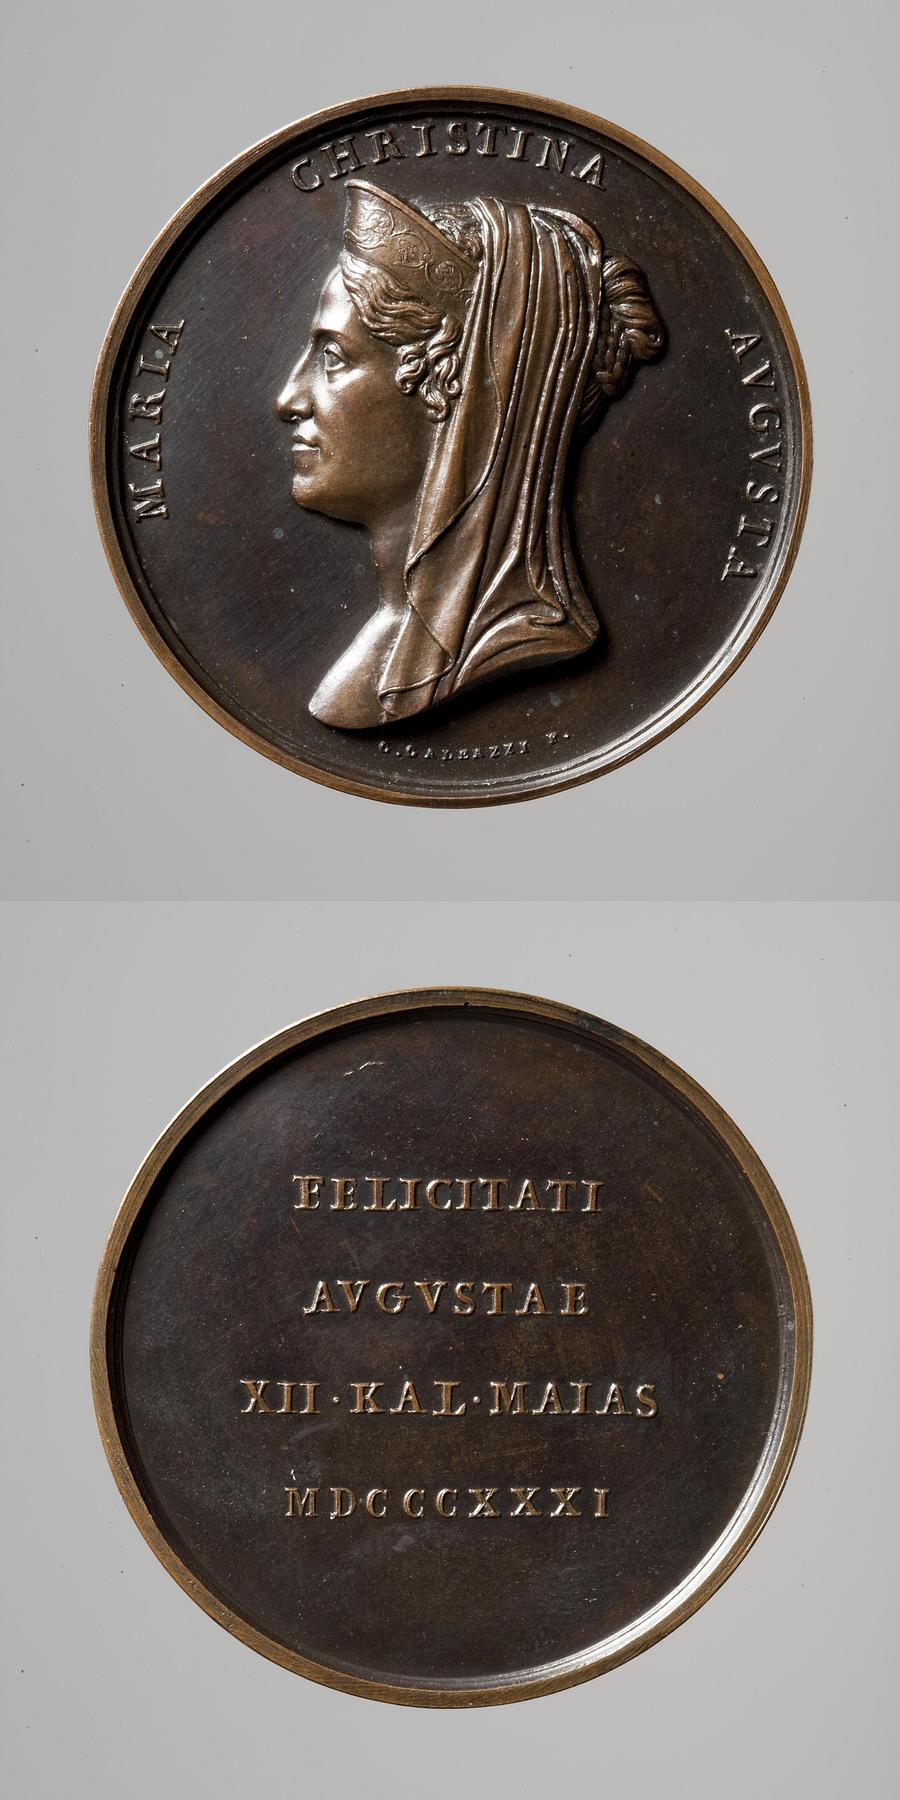 Medaljens forside: Dronning Maria Christina af Begge Sicilier. Medaljens bagside: Inskription, F63